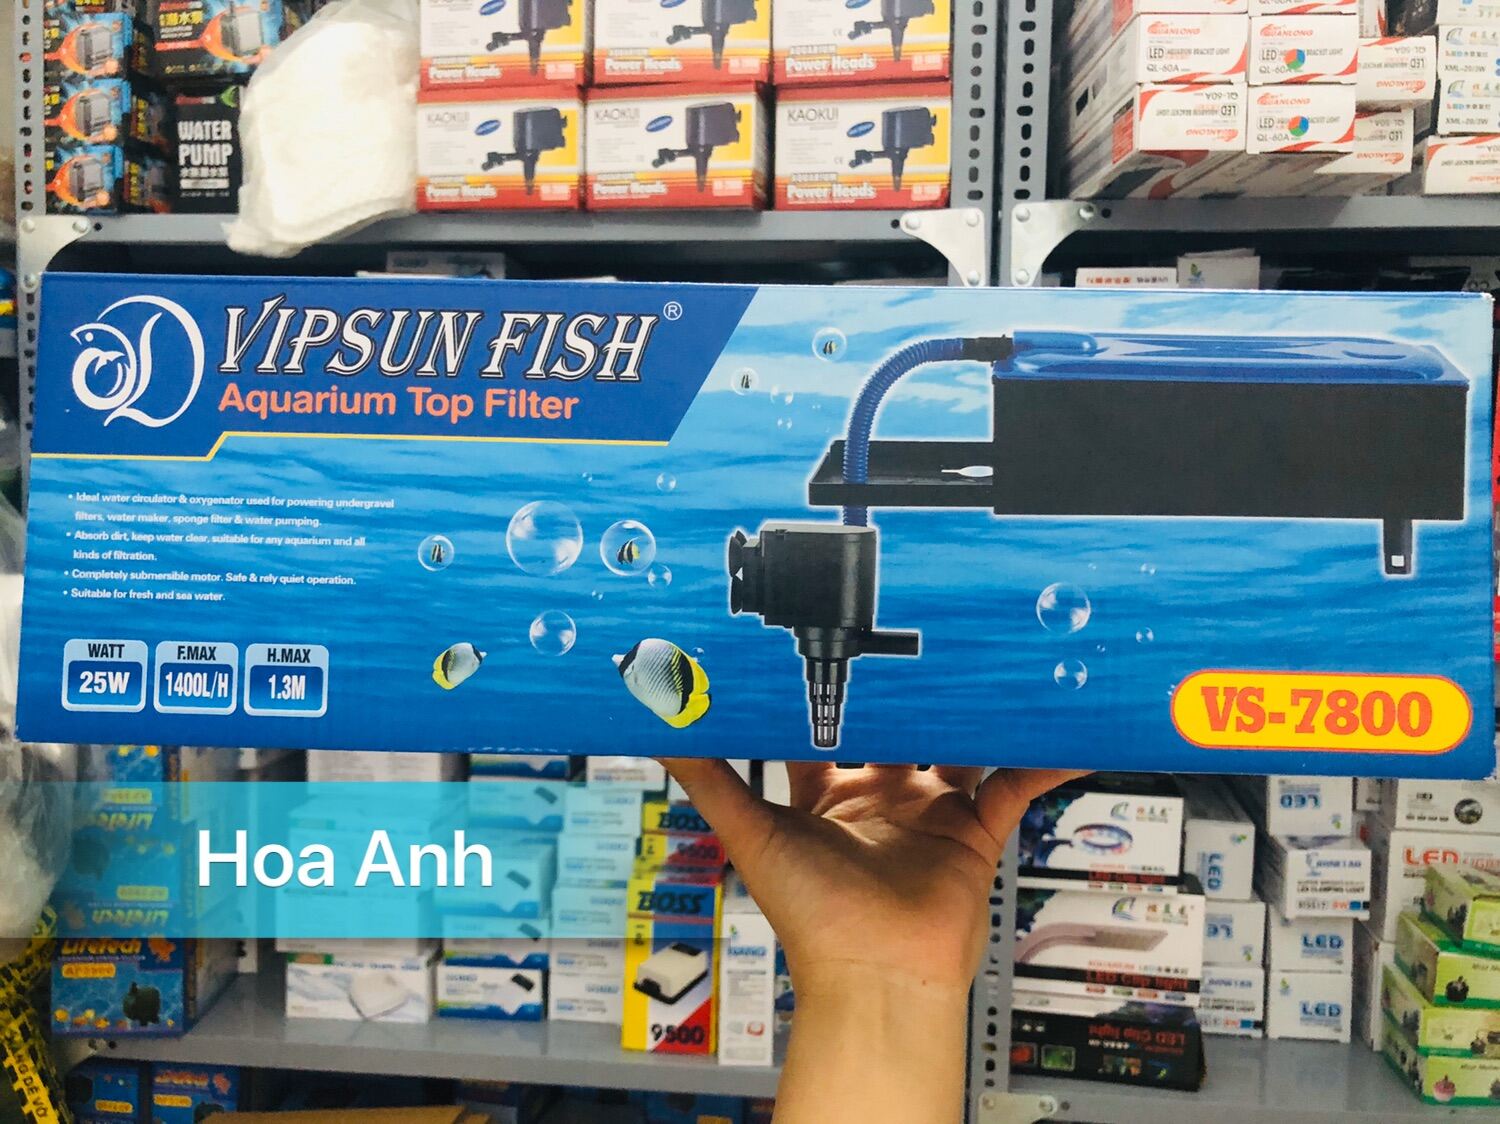 Vipsun Fish VS-7800 - Bộ Máng và Máy Bơm Lọc Nước Hồ Cá - Có bông lọc